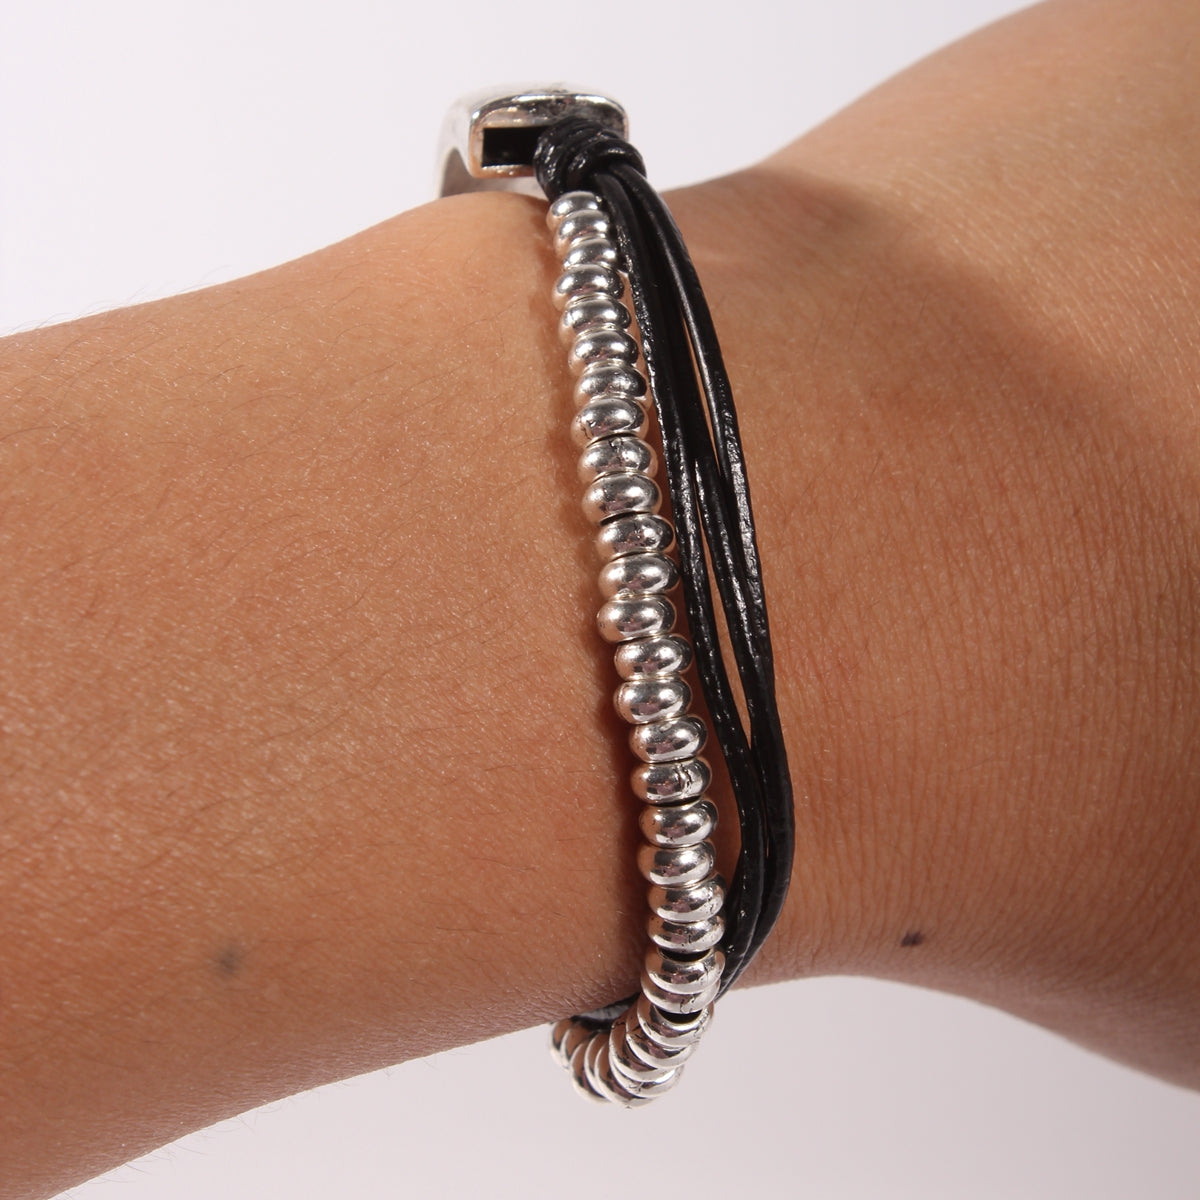 Genuine leather handmade women's bracelet MBR-10